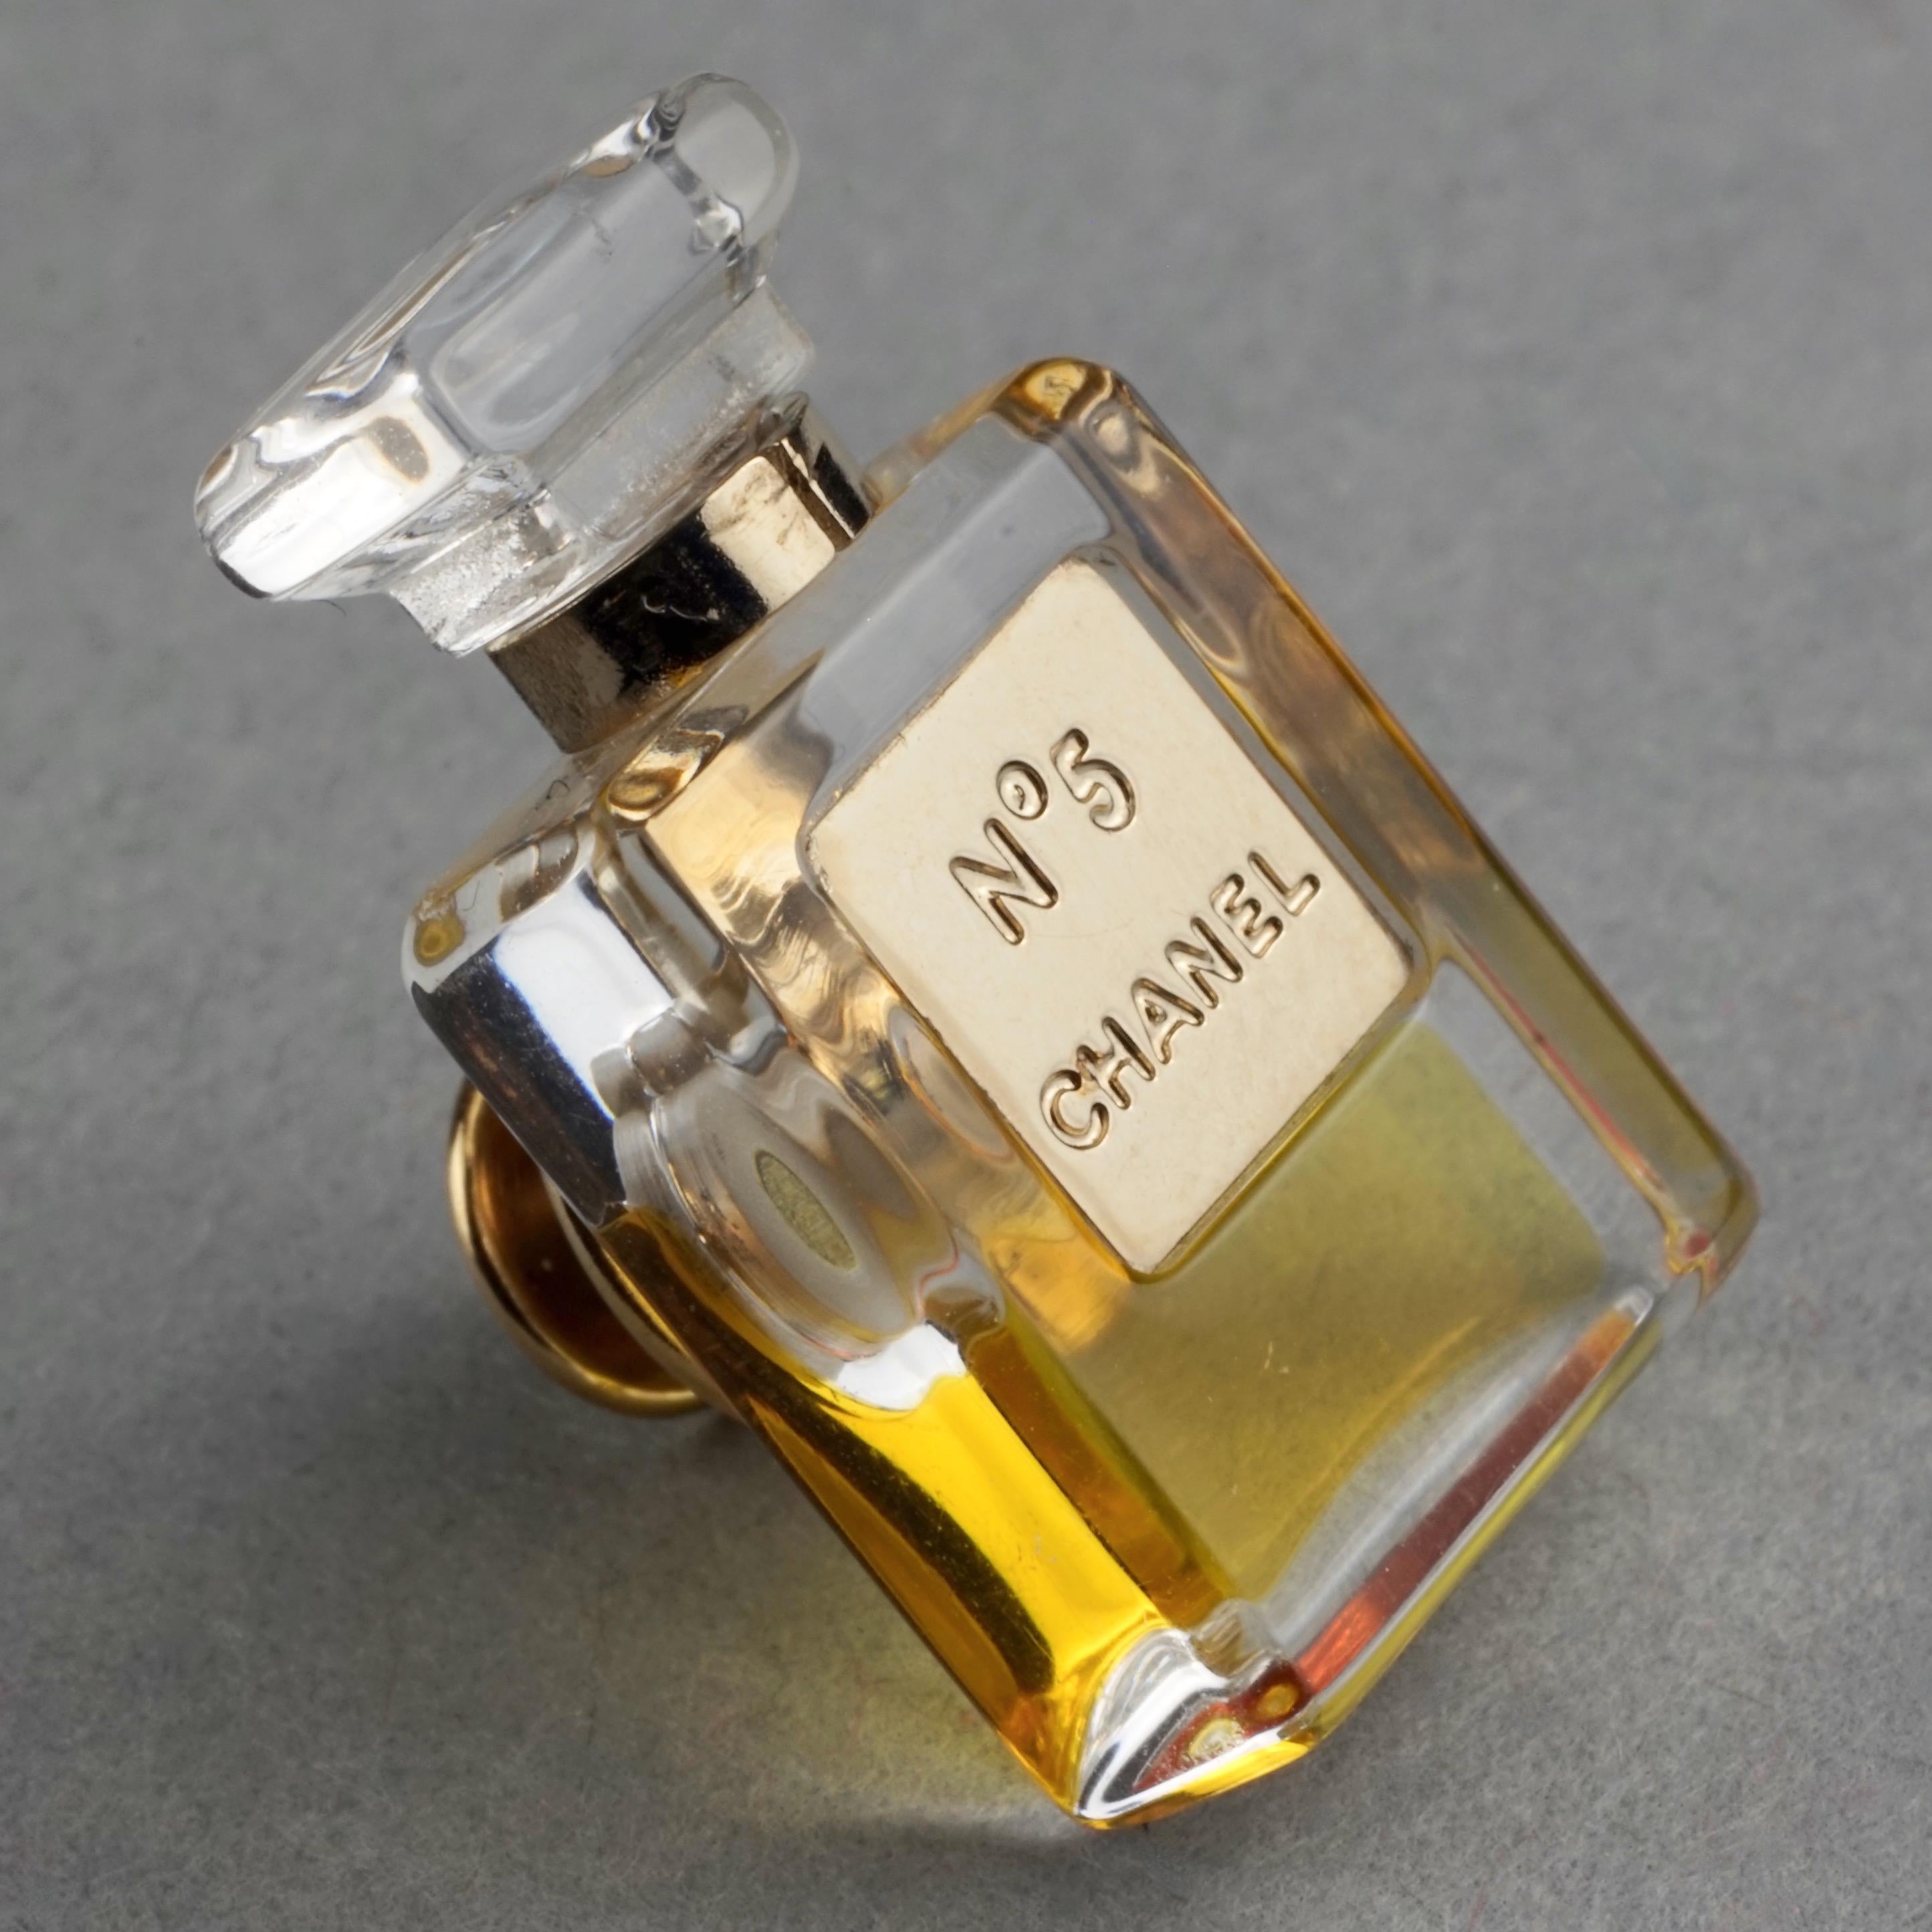  Broche vintage CHANEL n°5 Miniature en forme de bouteille de parfum avec épingle Unisexe 